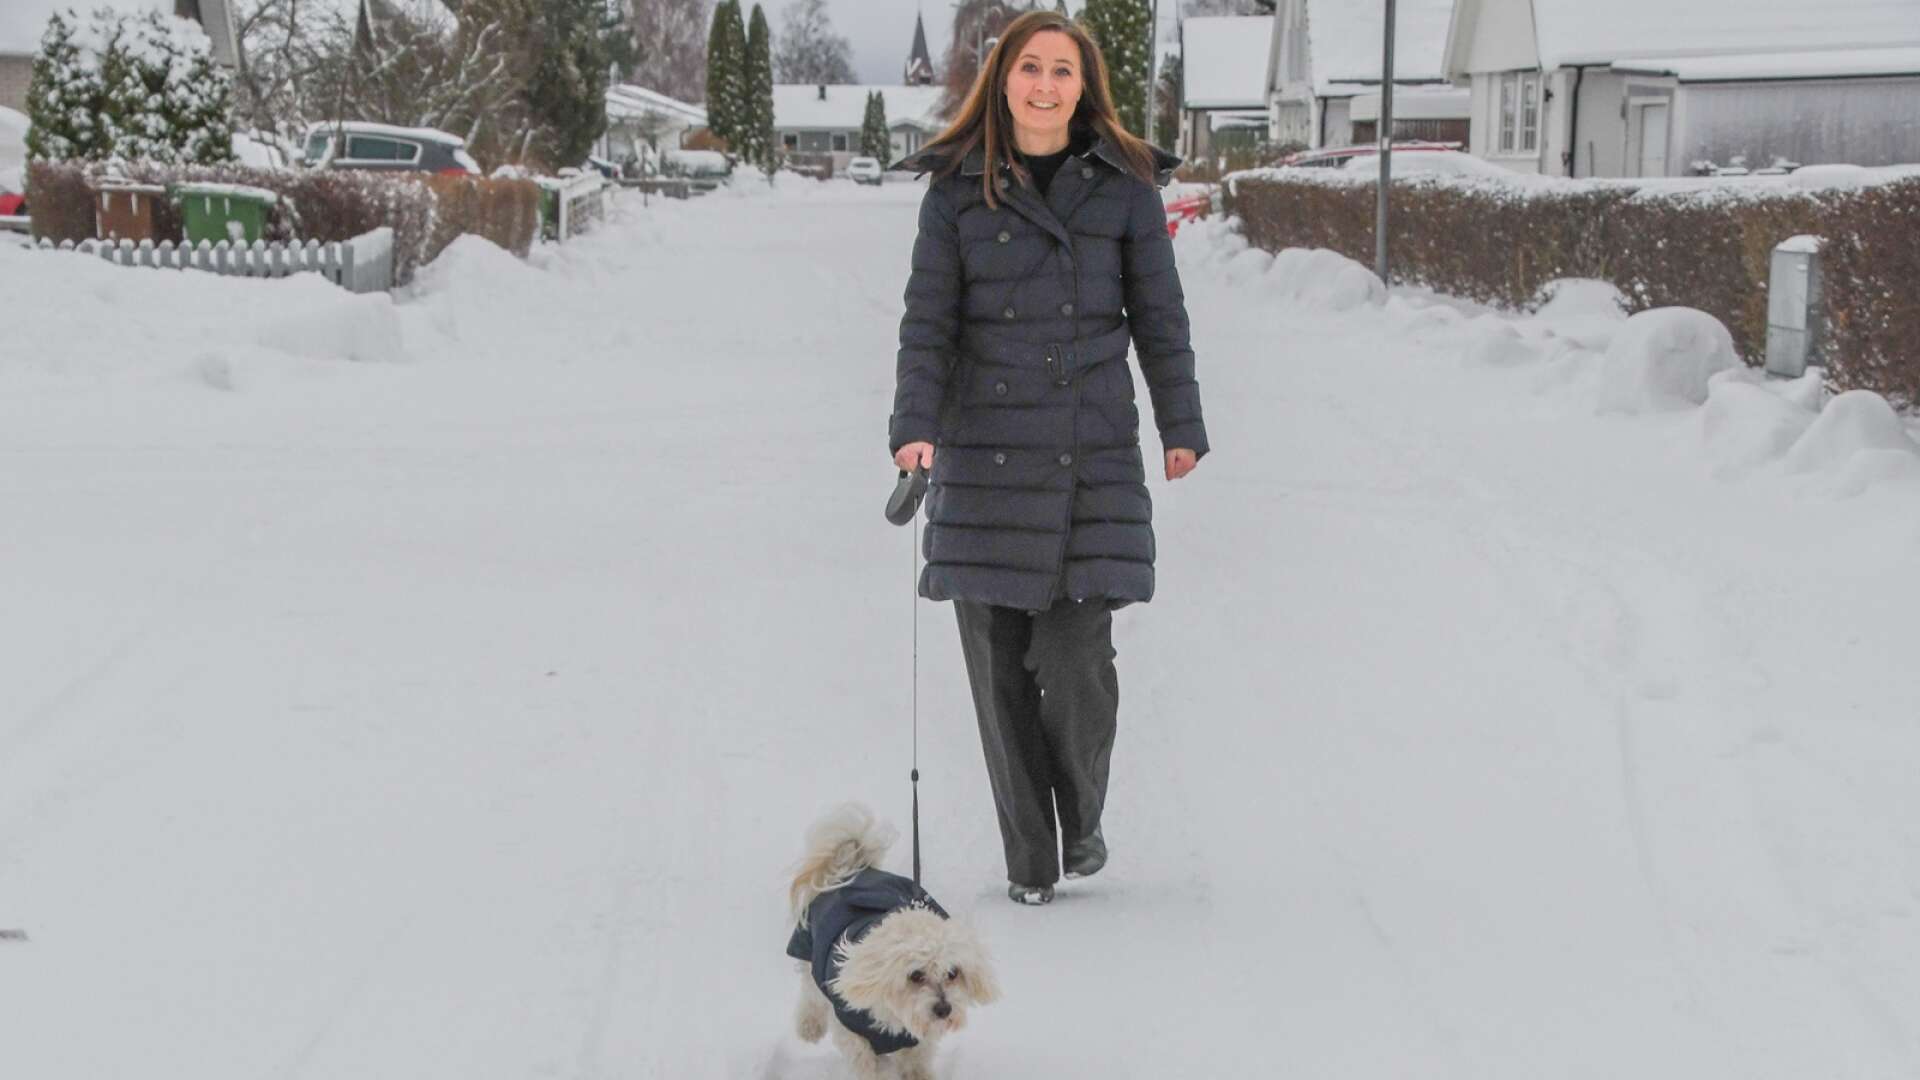 När Linn Brandström är ute och går med hunden Svante blir hon ofta kontaktad av kommuninvånare som vill diskutera både det ena och det andra. Det uppskattar hon, medan Svante först och främst uppskattar snö. 